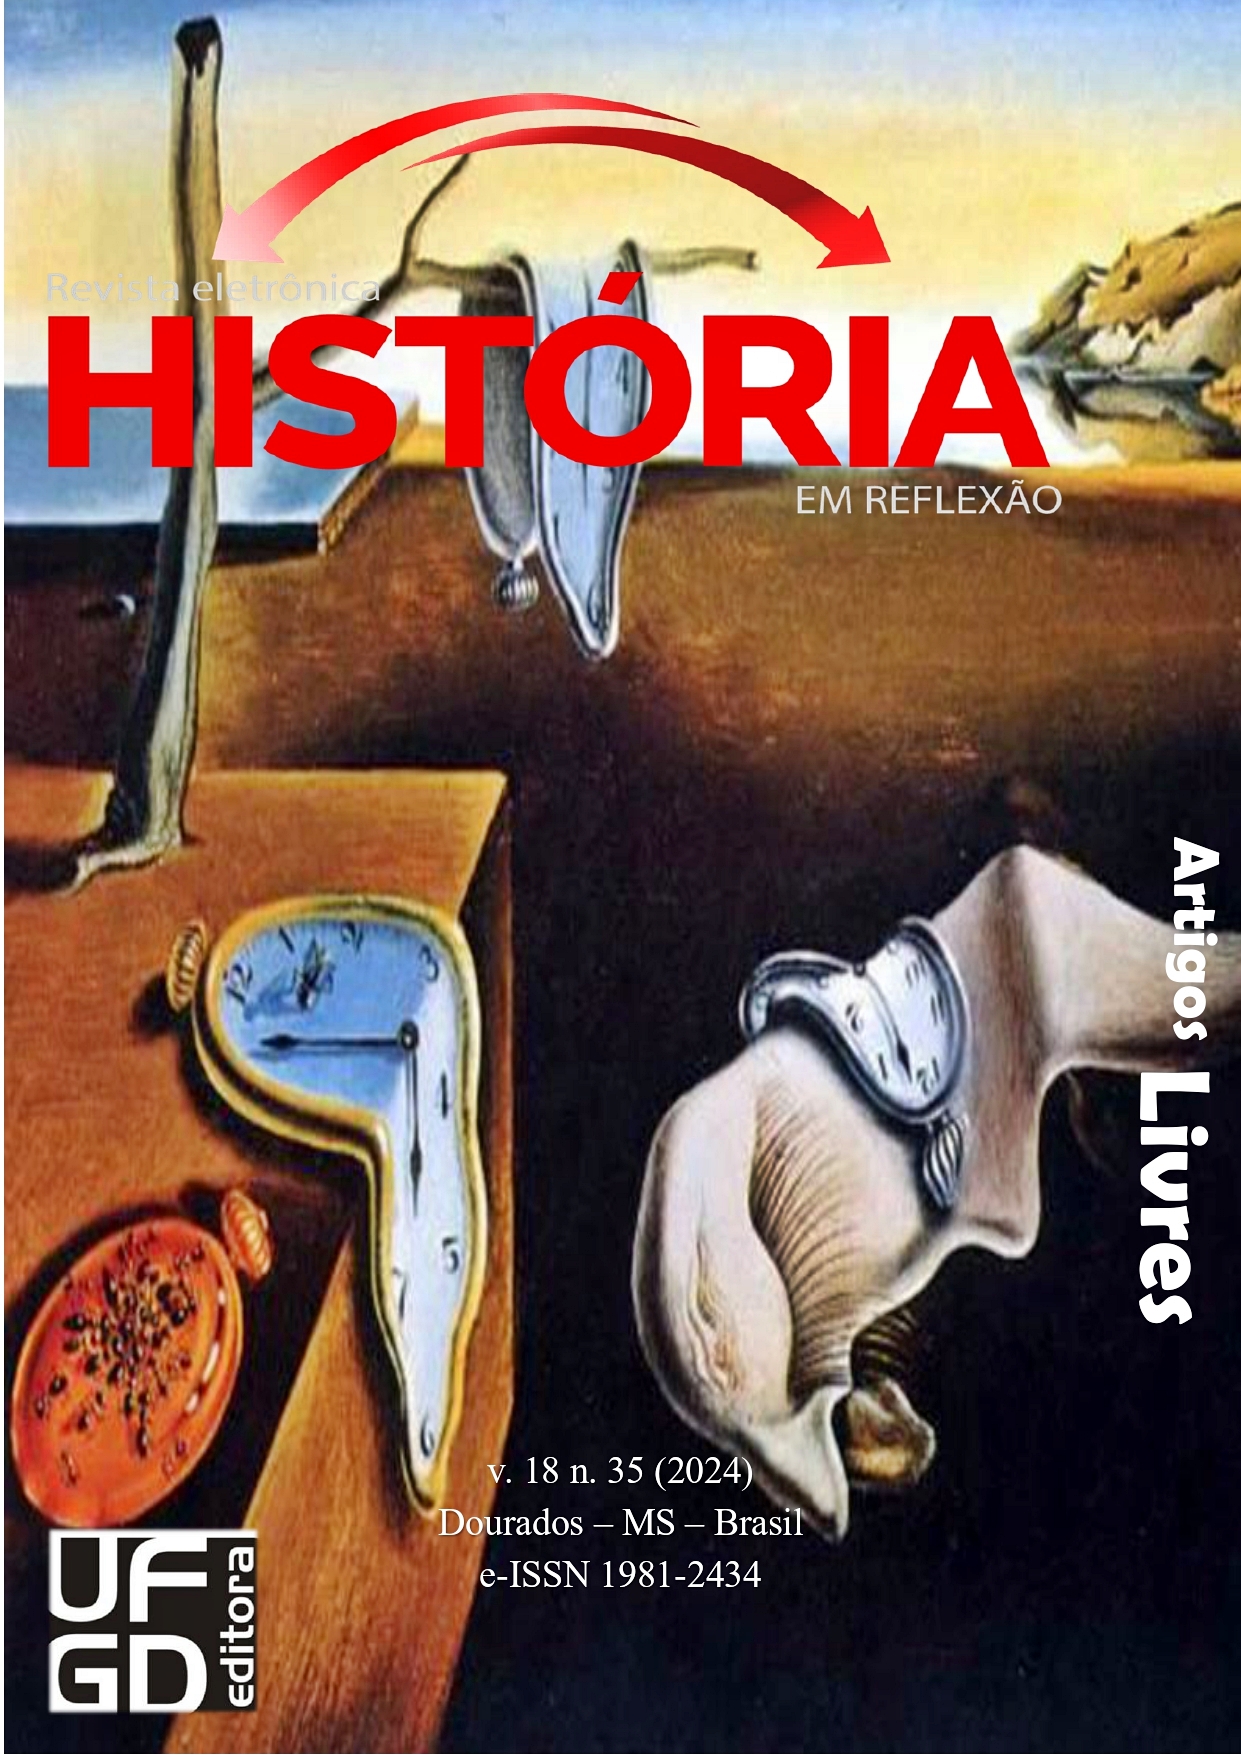 					Ver Vol. 18 Núm. 35 (2024): Revista História em Reflexão
				